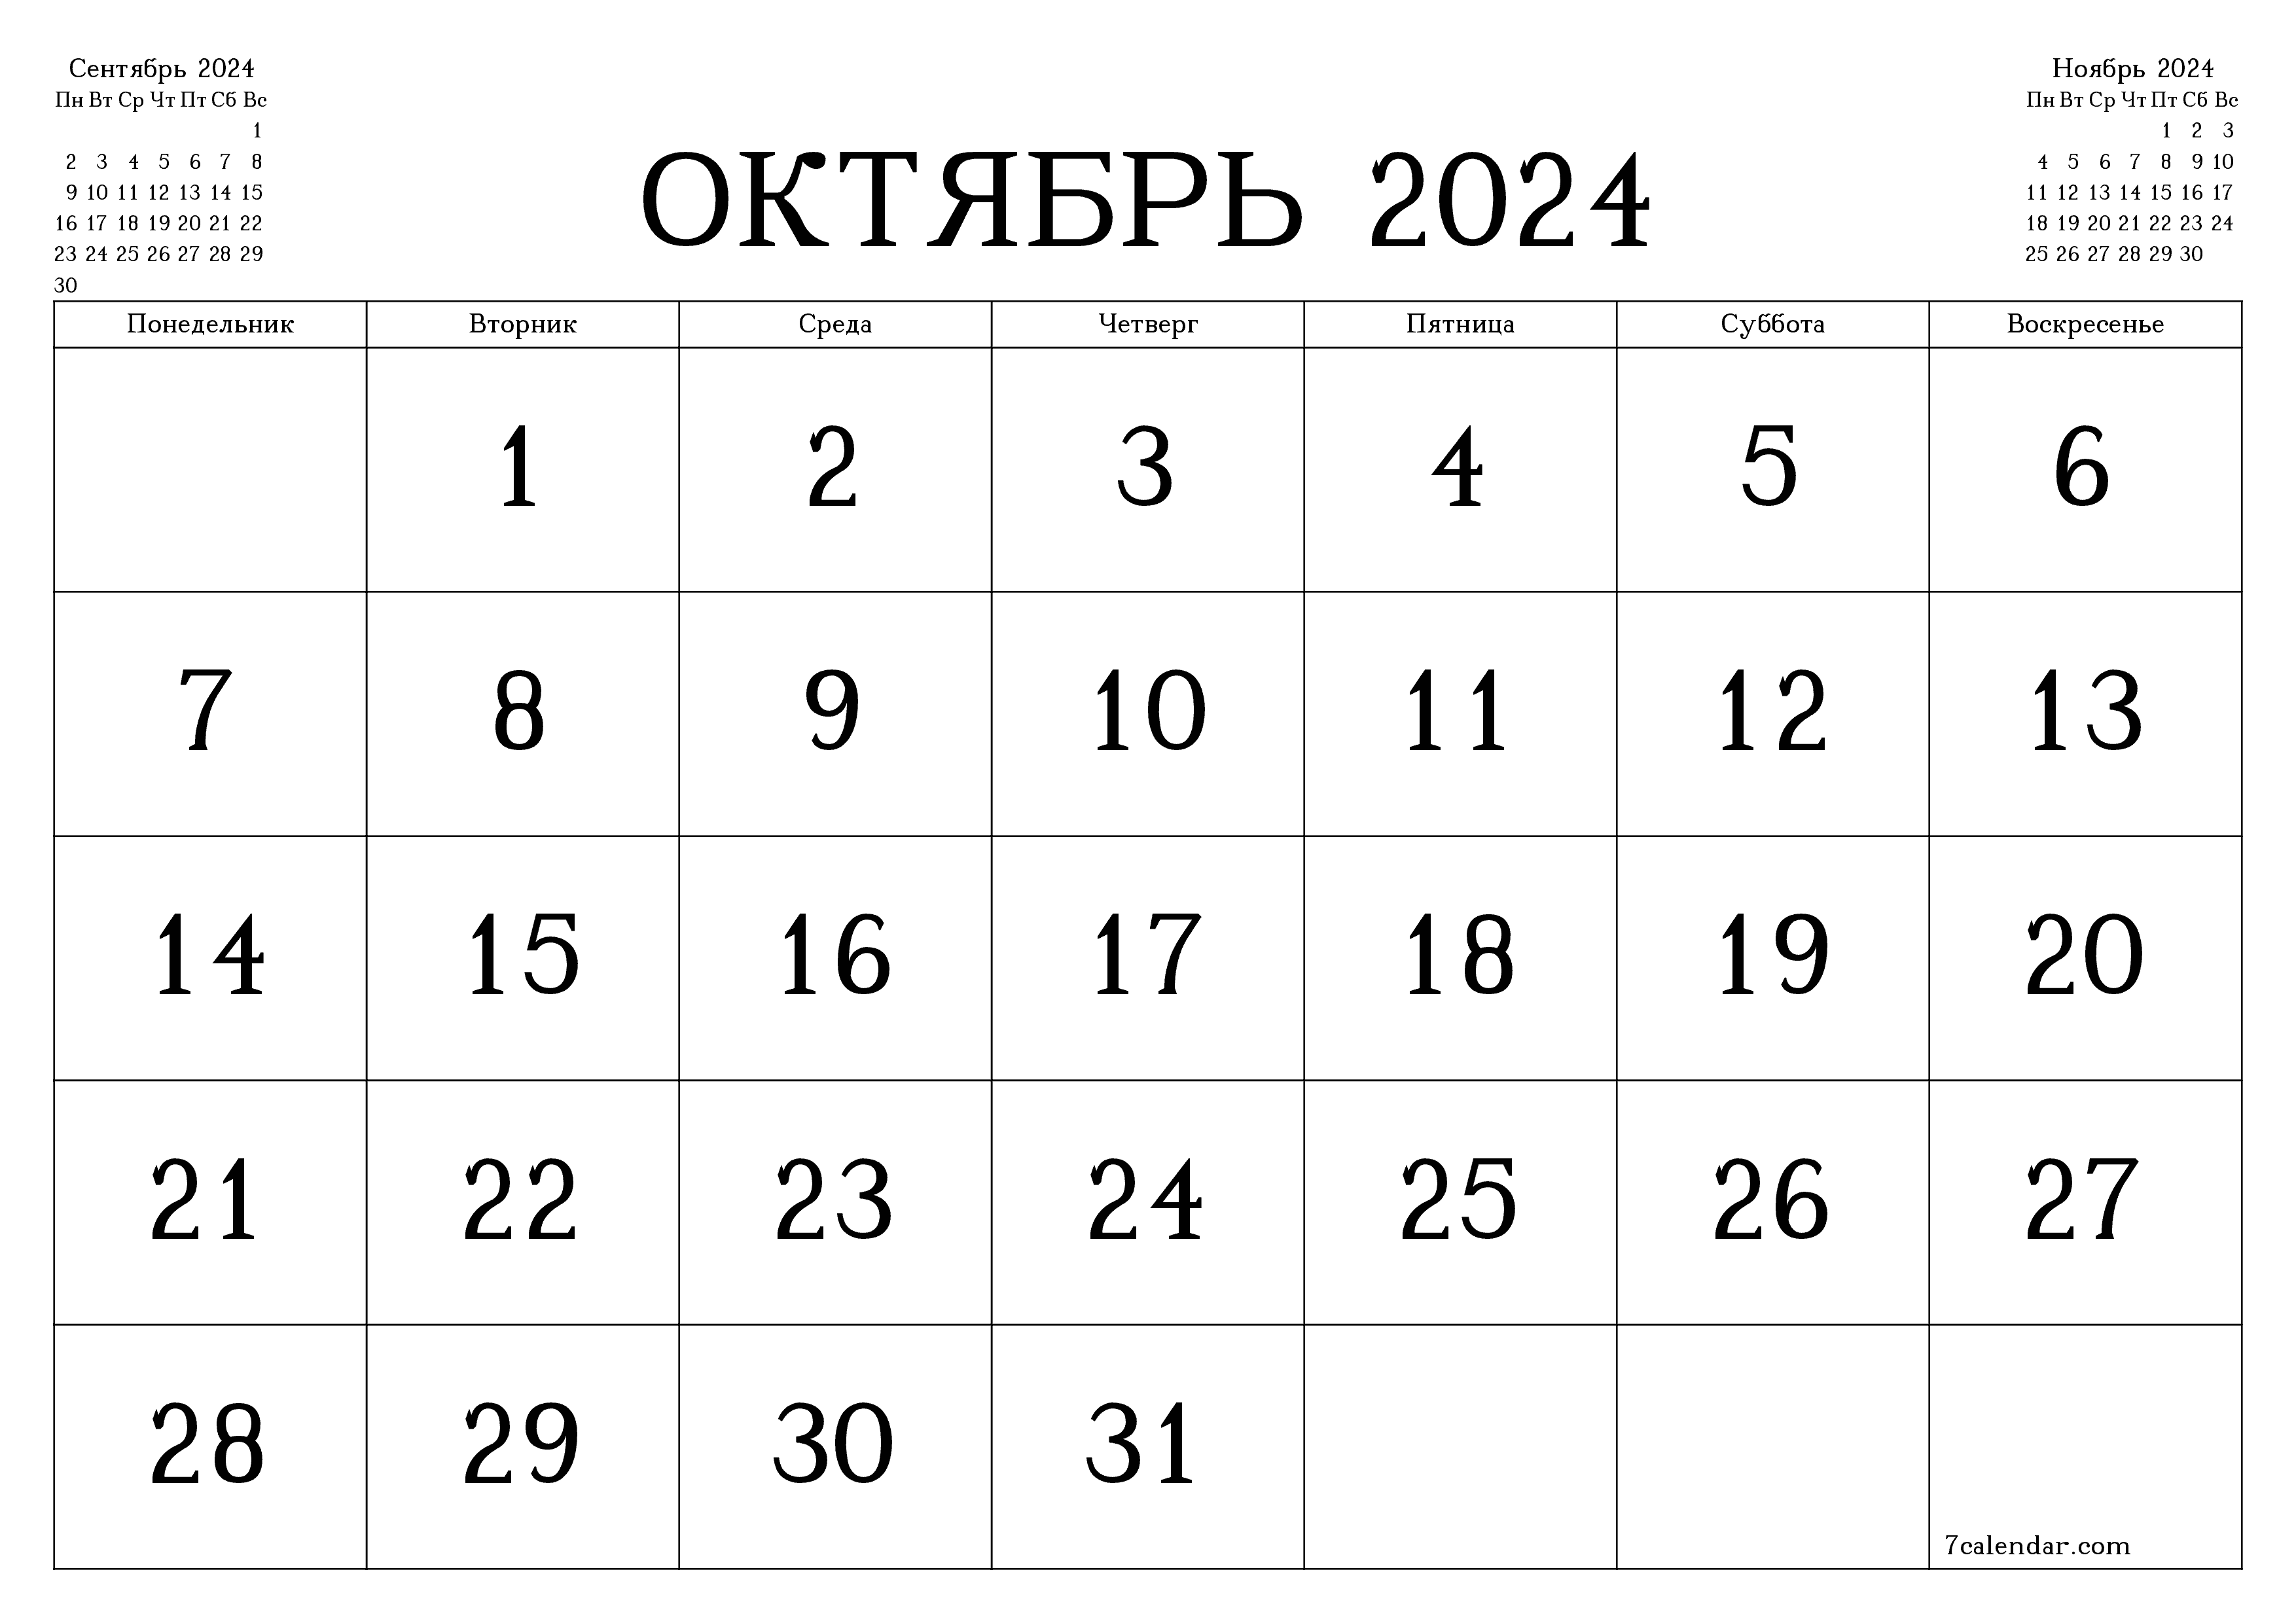 Календари и планеры для печати на месяц Октябрь 2024 A4, A3 в PDF и PNG -  7calendar